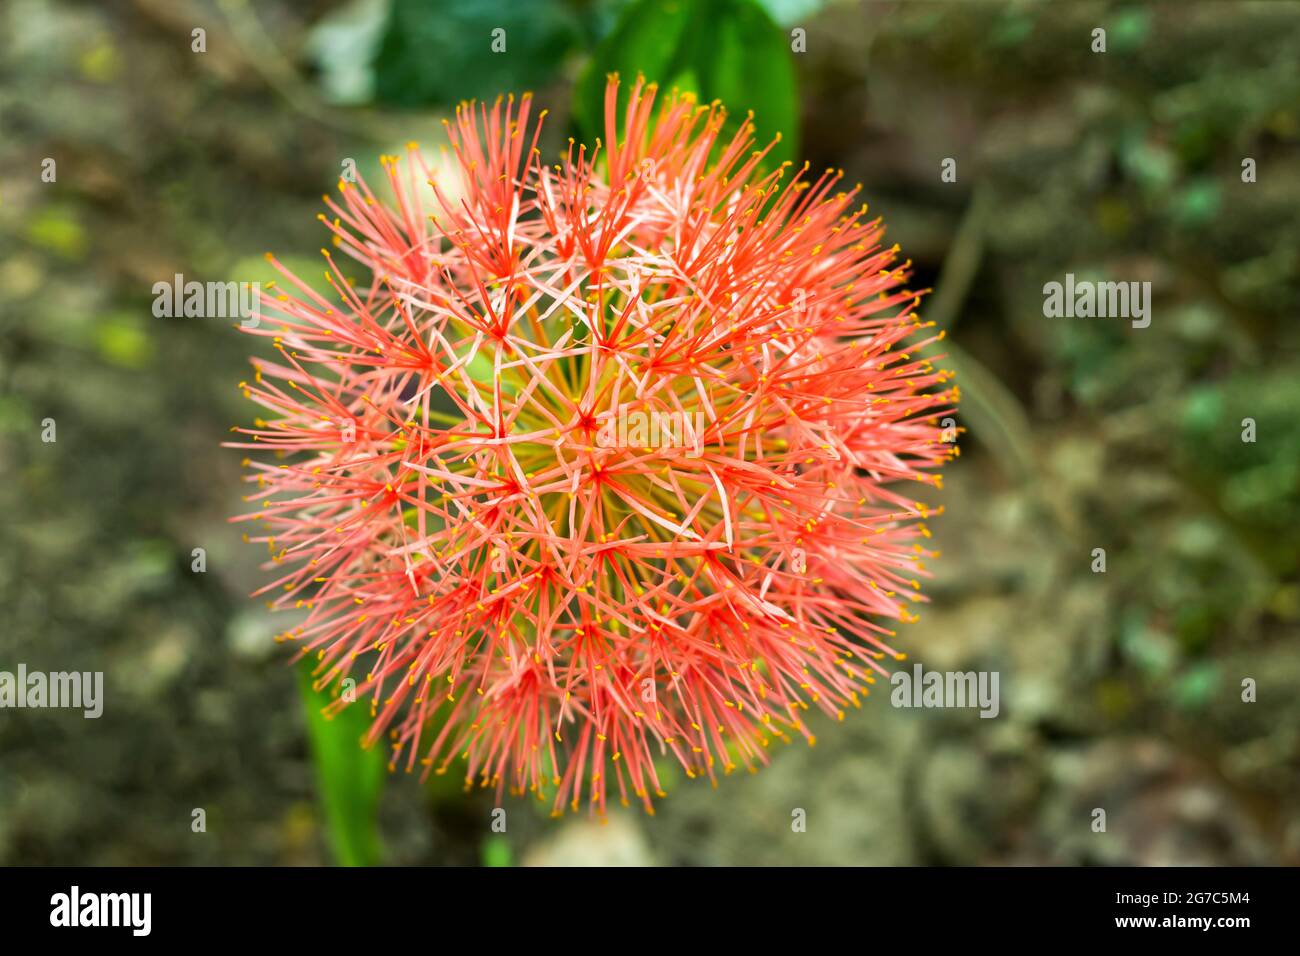 Häufig genannt Blutlilie oder mayflower oder Blutlilie alias Feuerballlilie, ist ein Verwandter der Amaryllis und ebenso einfach, drinnen und draußen zu wachsen Stockfoto